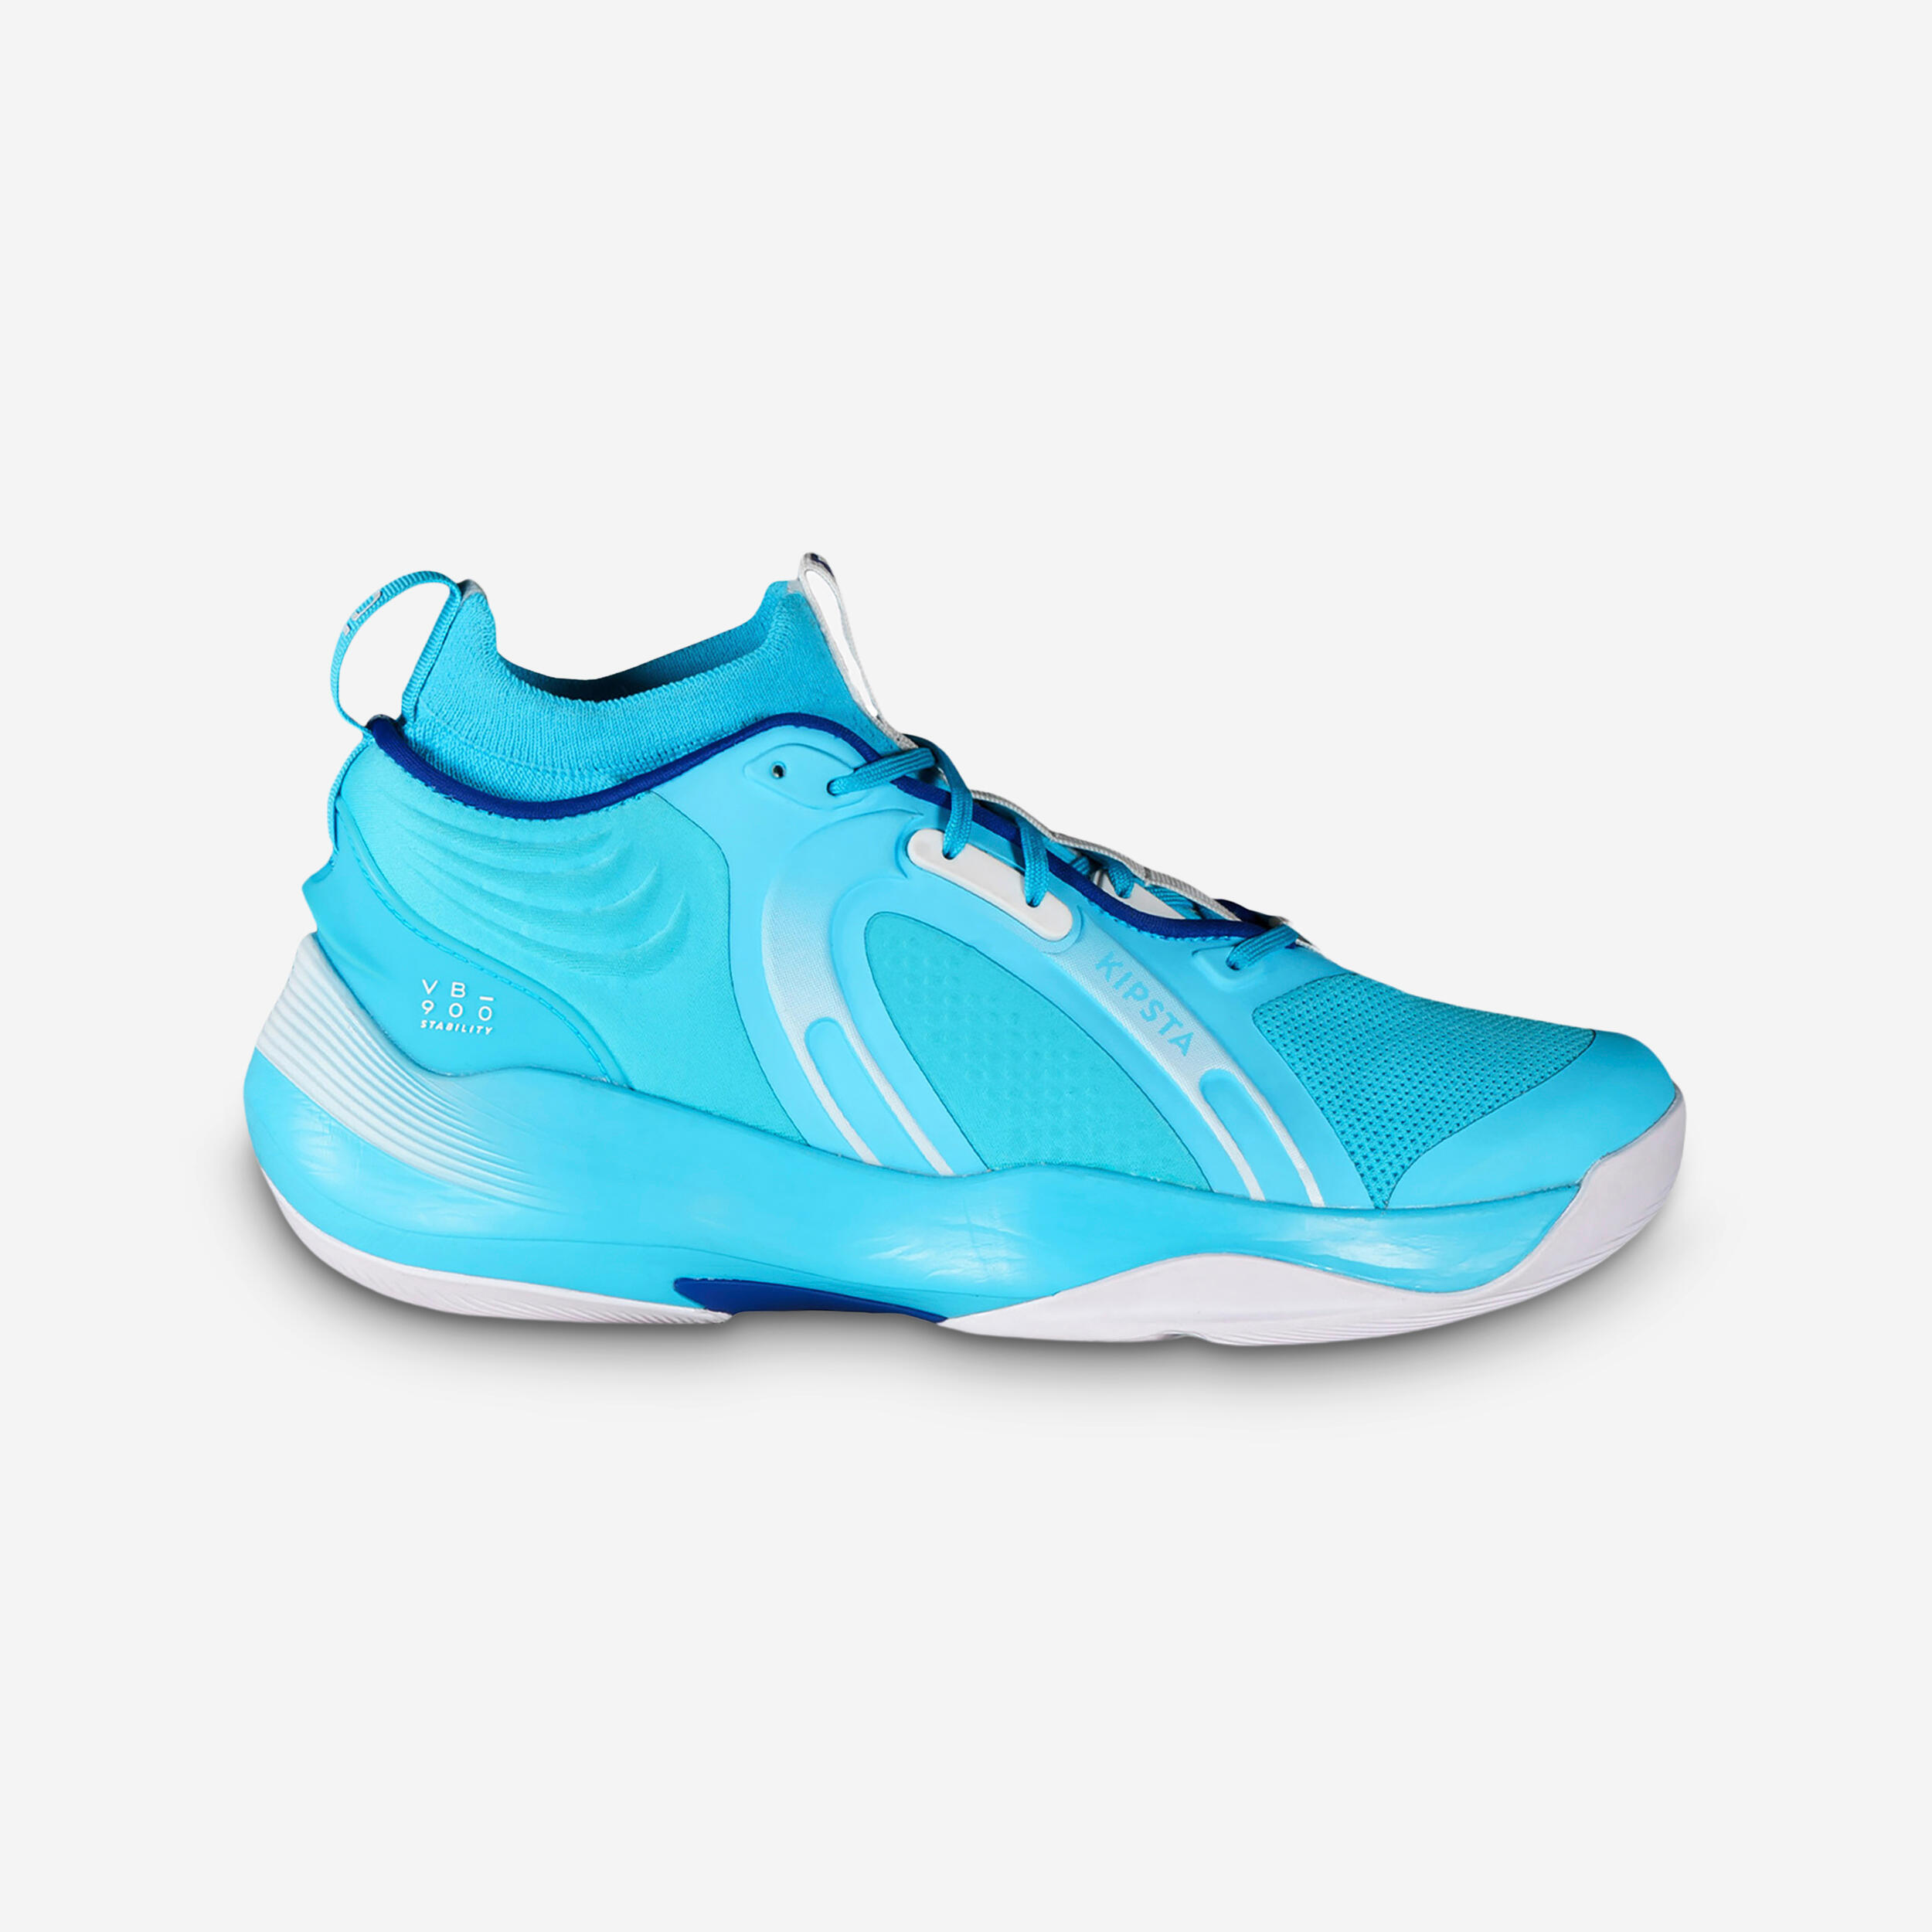 KIPSTA Chaussures De Volley-Ball Unisexe - Vb900 Stability Bleu